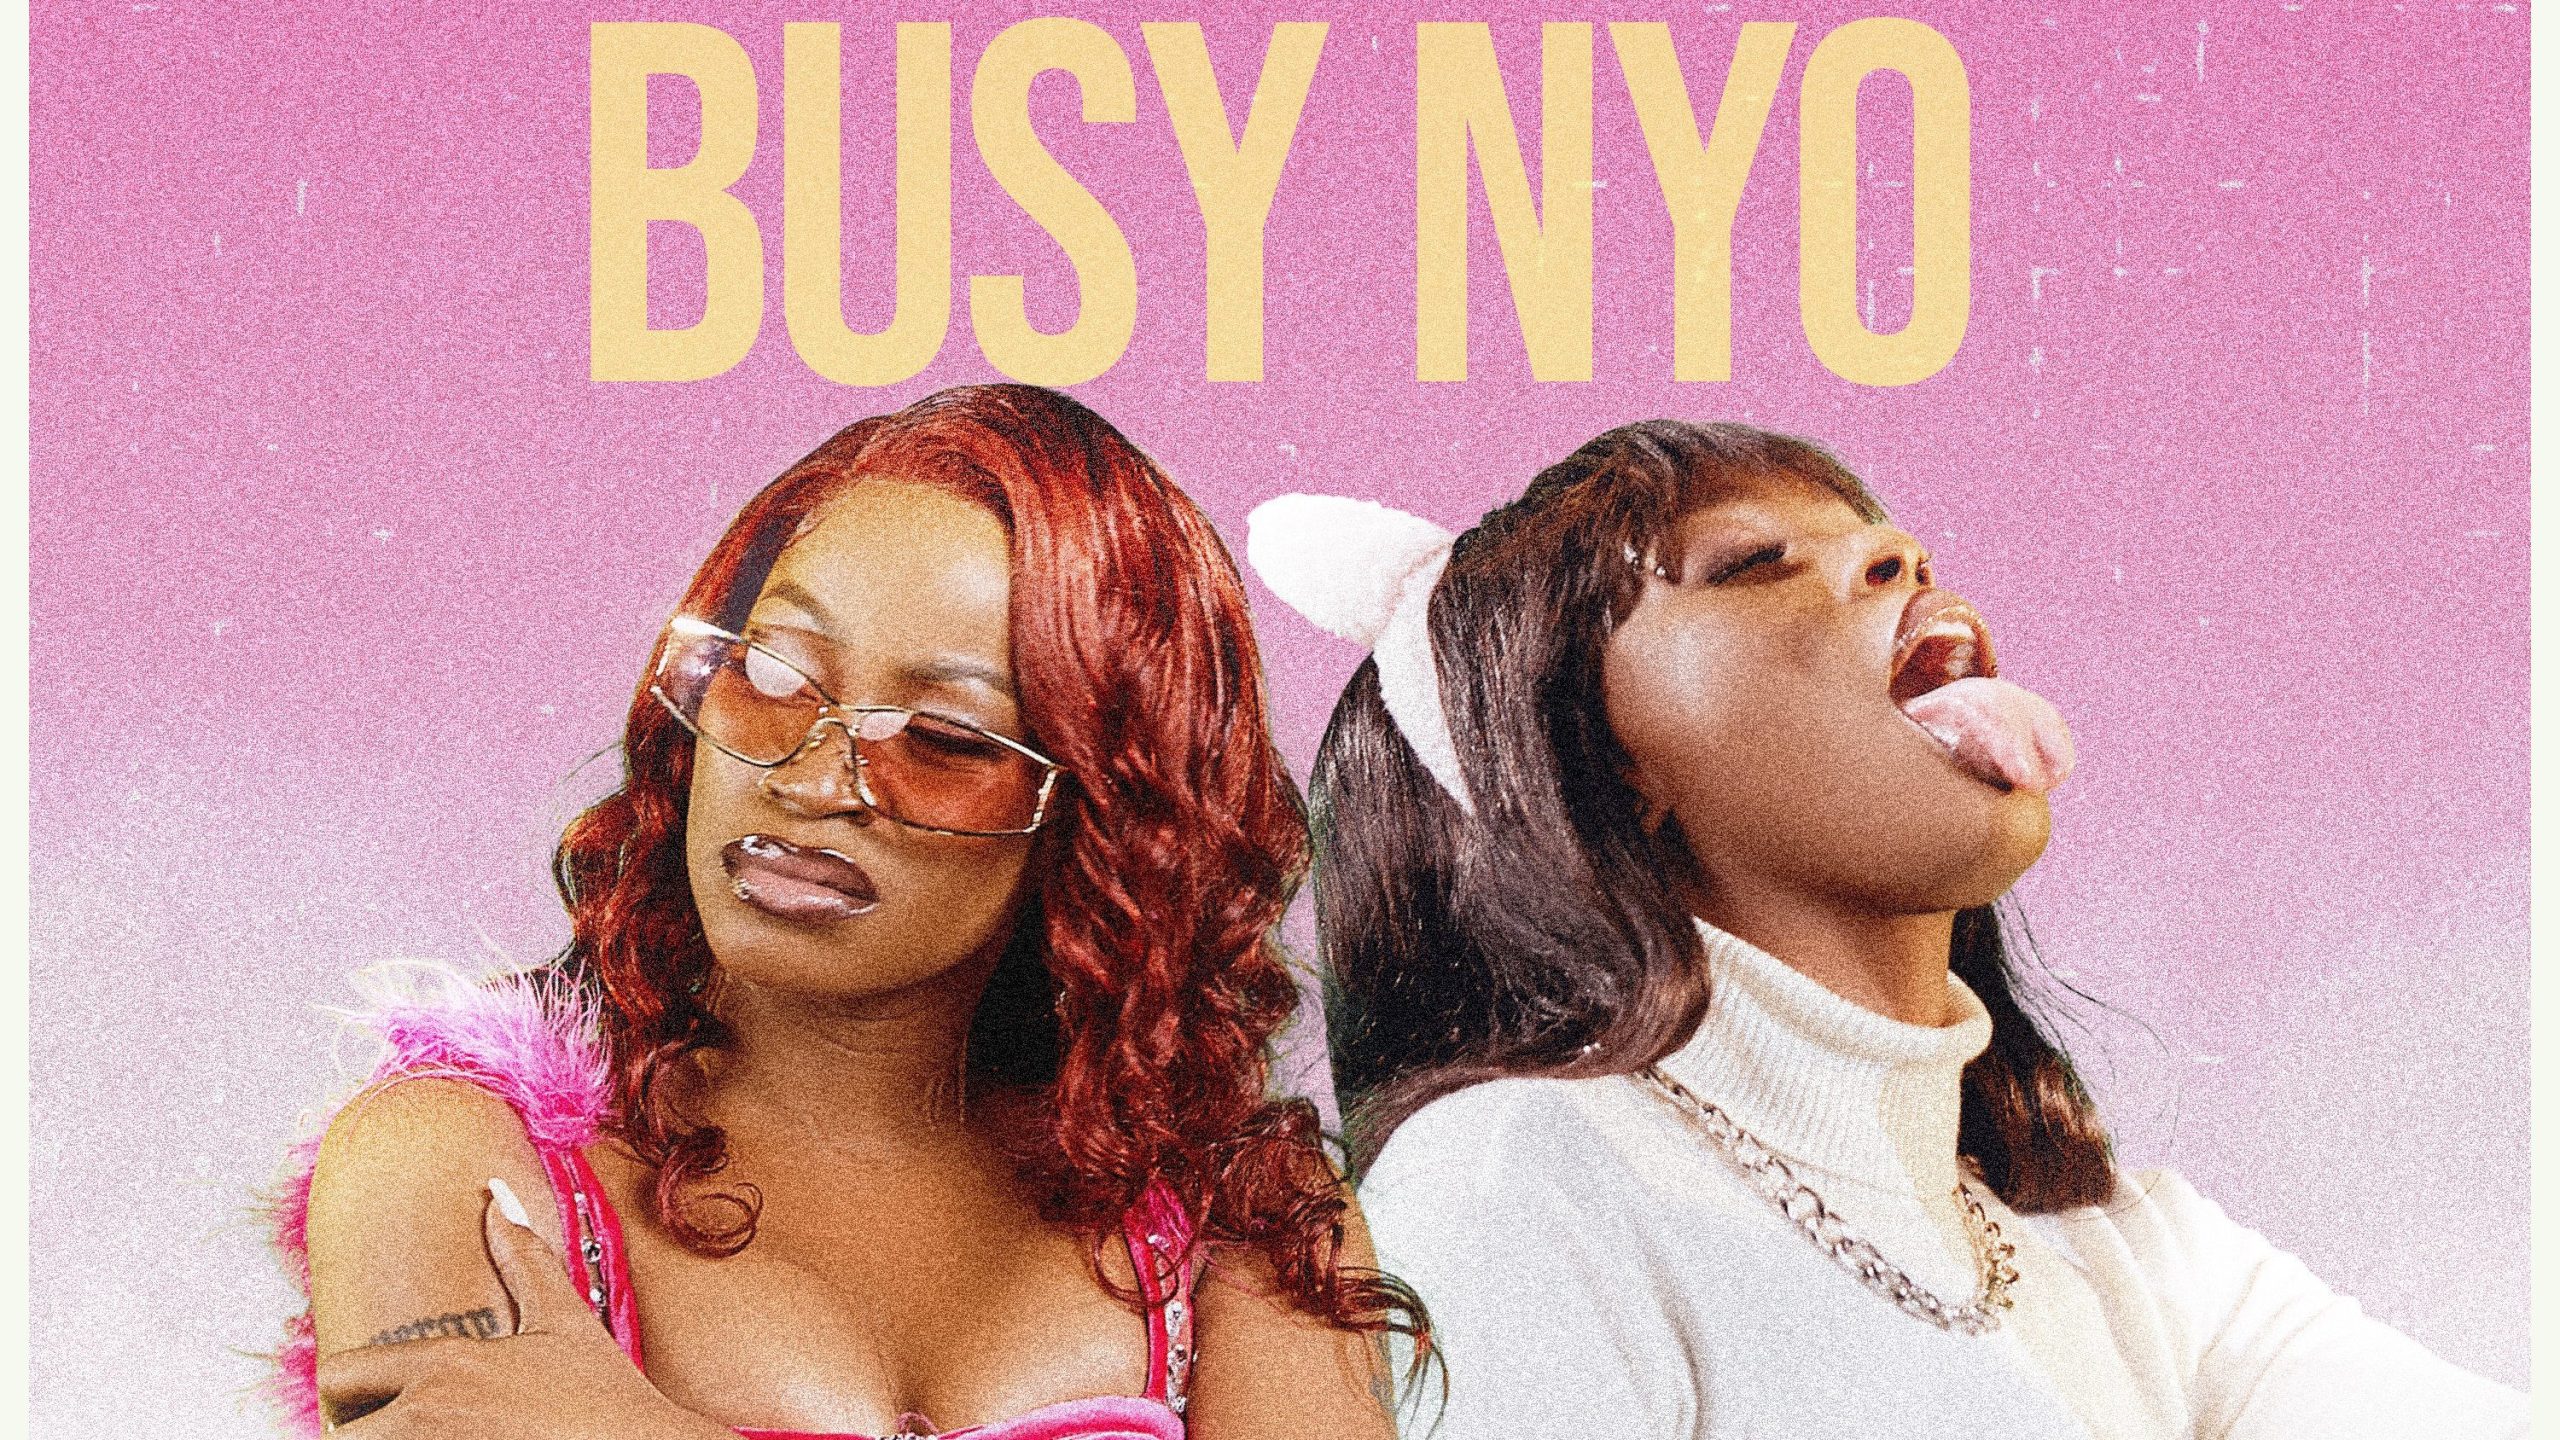 Sheebah Karungi and Kapa Cat tease new collaboration, 'Busy Nyo'